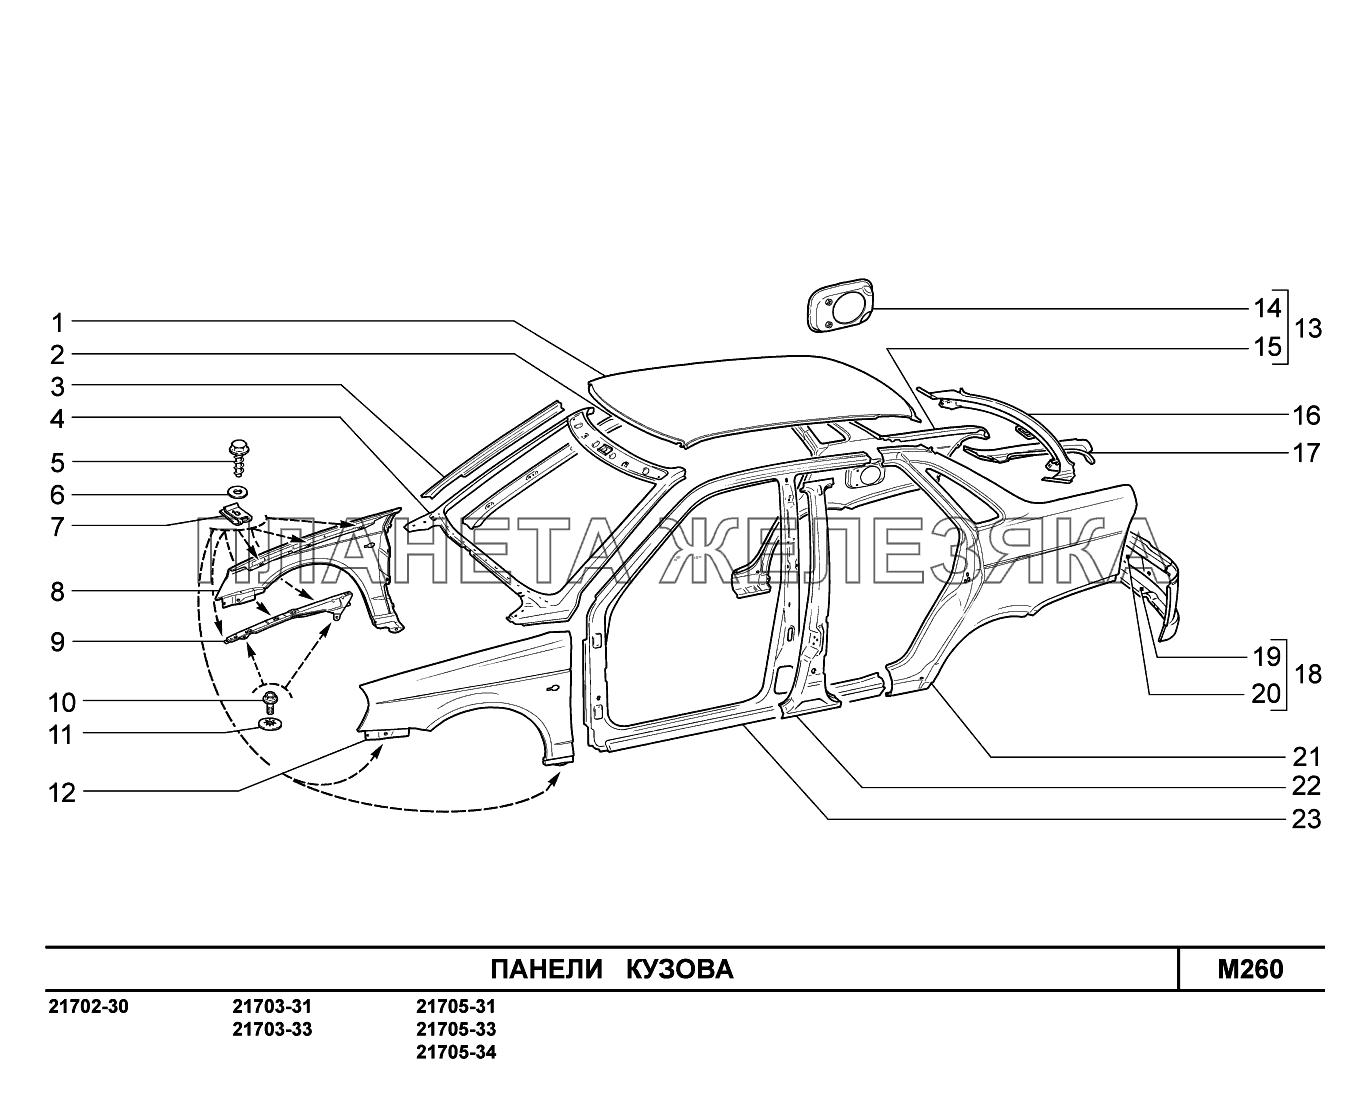 M260. Панели кузова ВАЗ-2170 